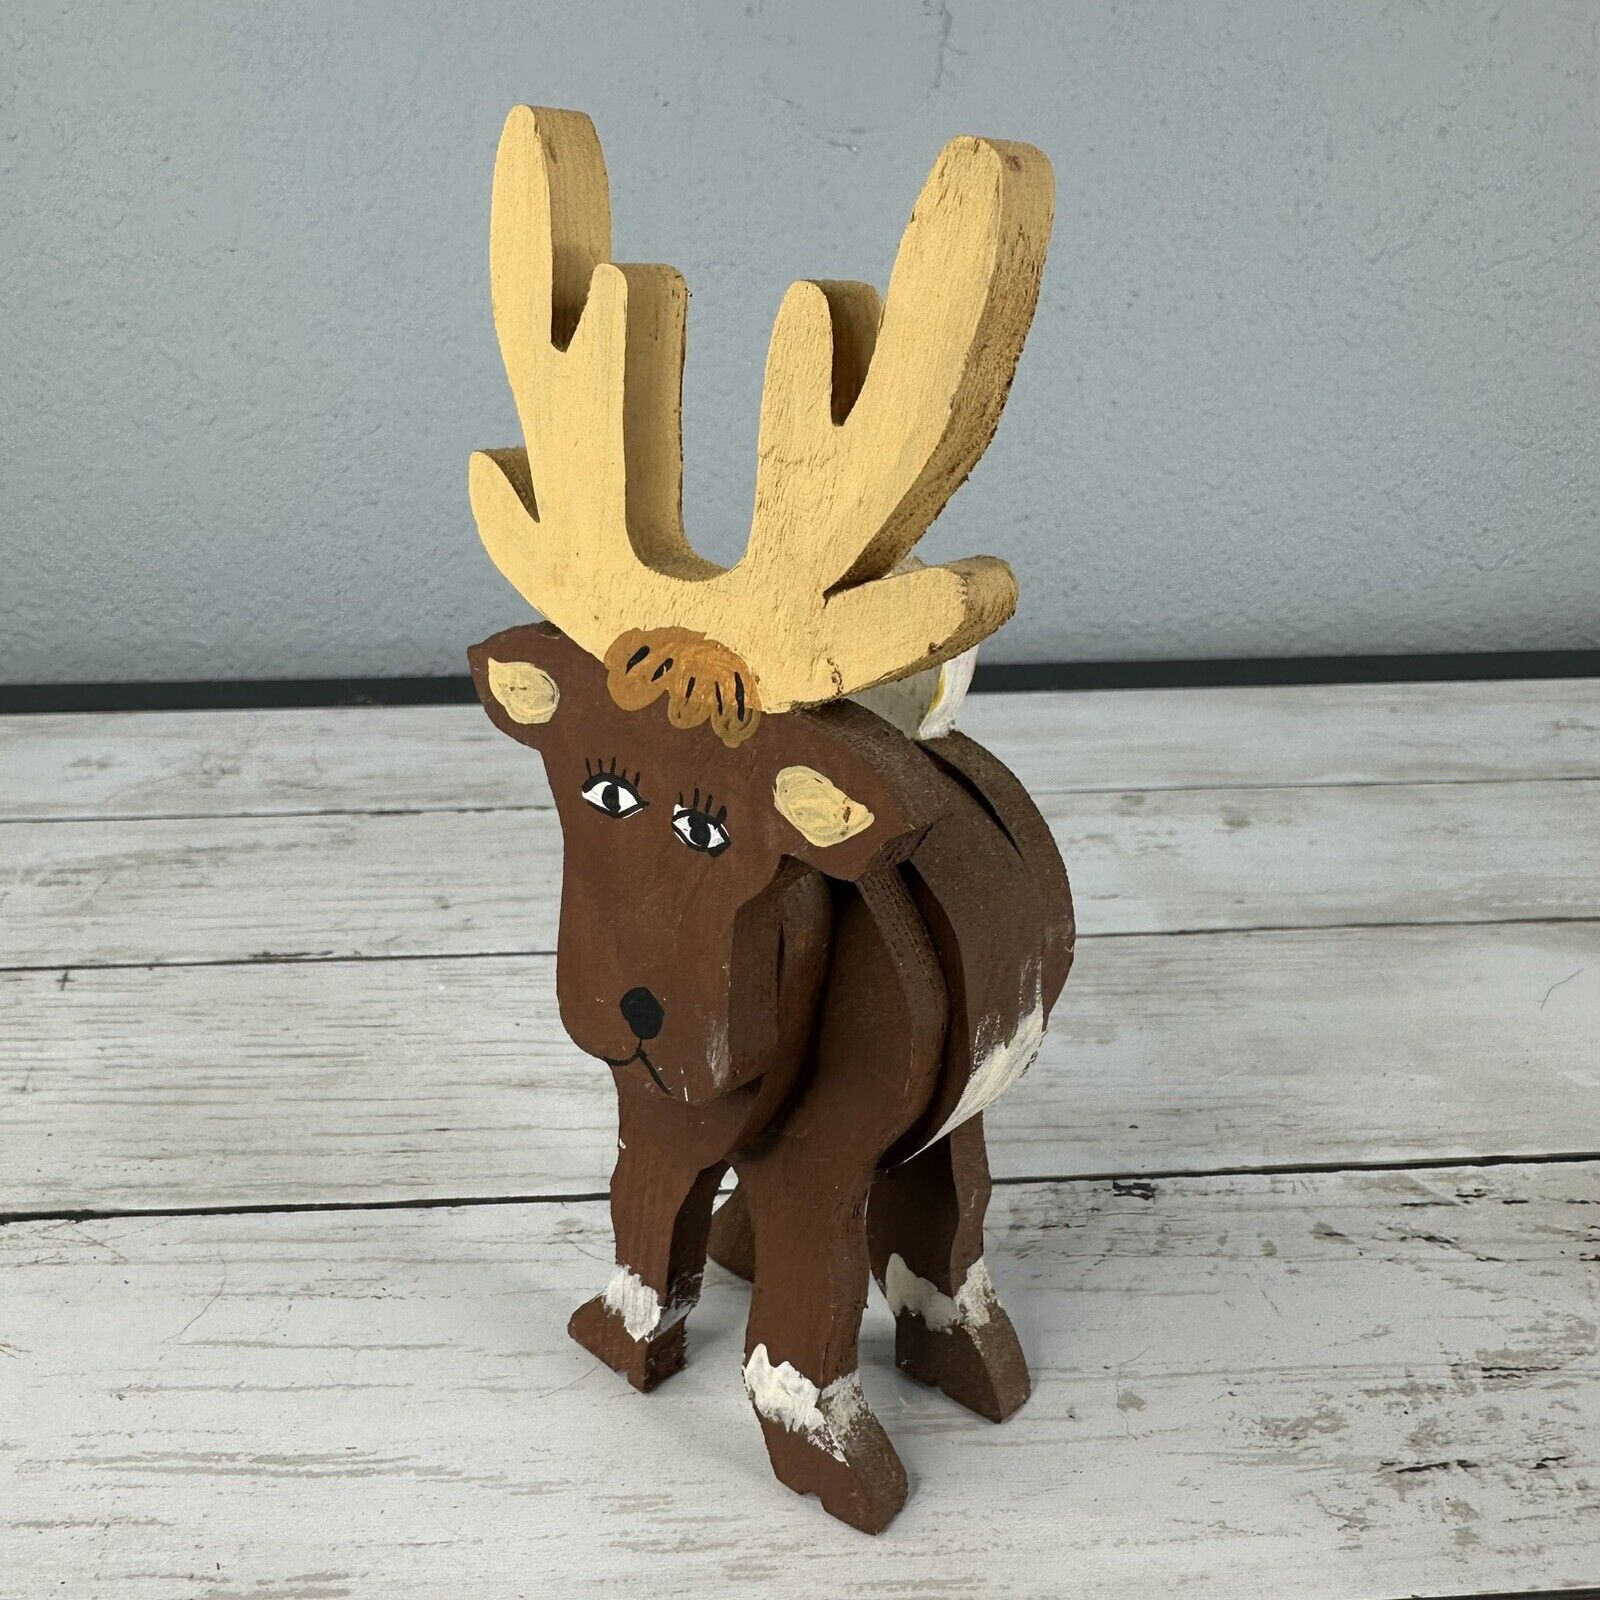 Vintage Folk Art - Hand Painted Wood Animal Figure - Moose